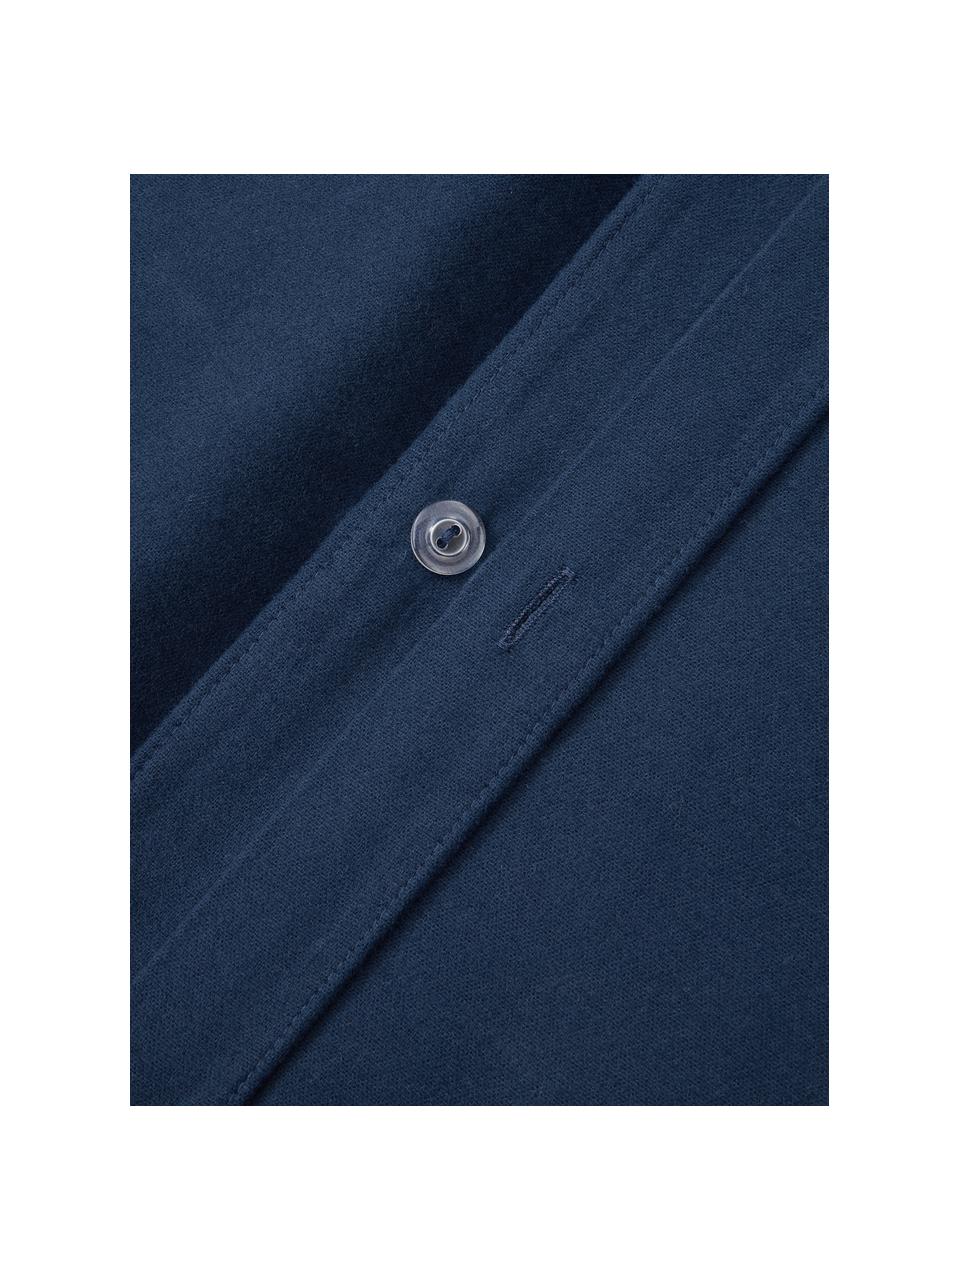 Flanell-Kopfkissenbezug Biba, Webart: Flanell Flanell ist ein k, Marineblau, B 40 x L 80 cm